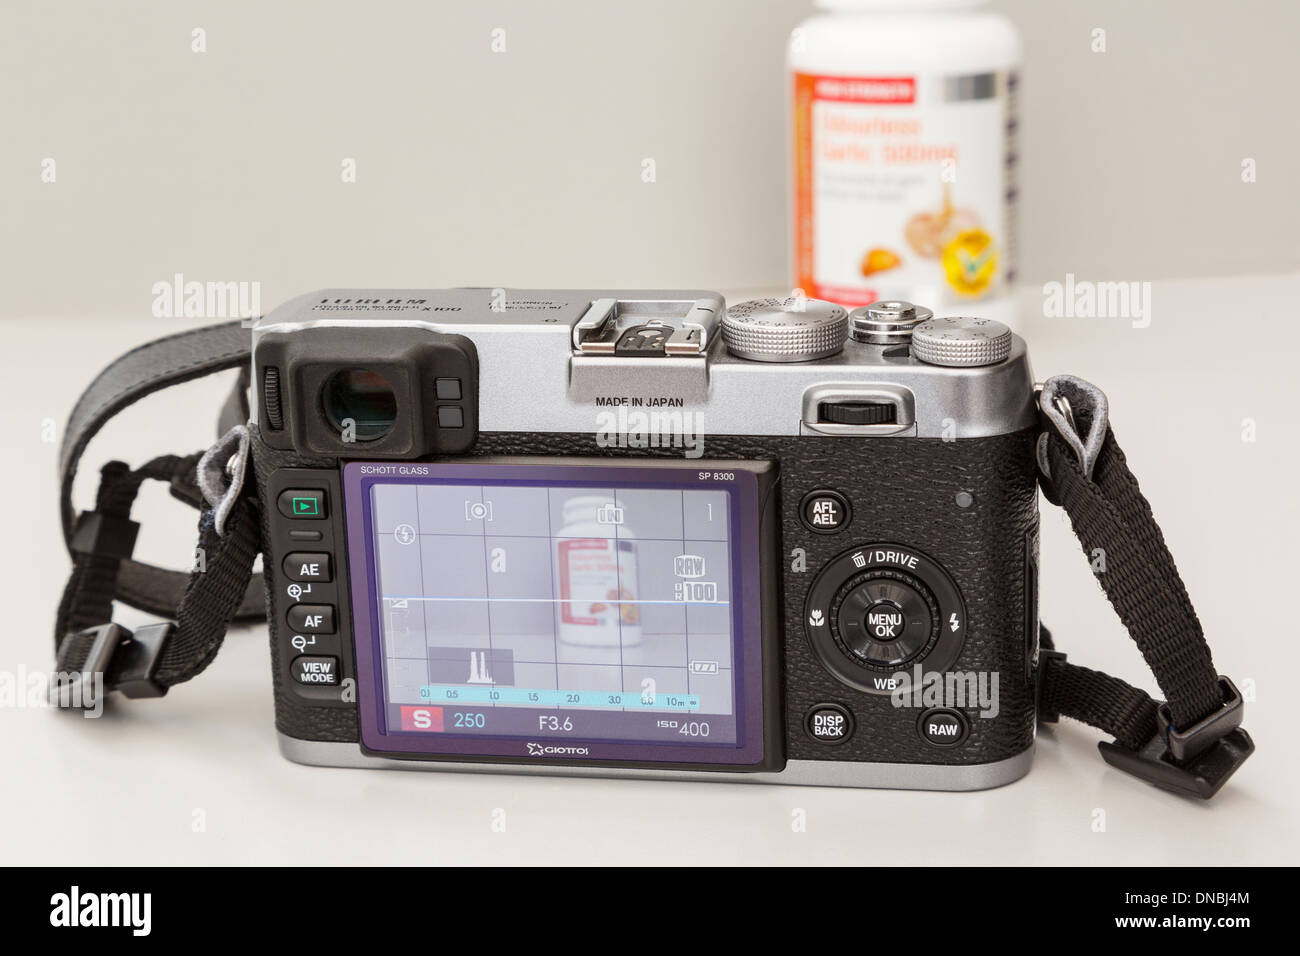 Fujifilm X100 retrò fotocamera digitale compatta con display LCD posteriore che mostra le impostazioni e modalità live view fotografando un oggetto Foto Stock